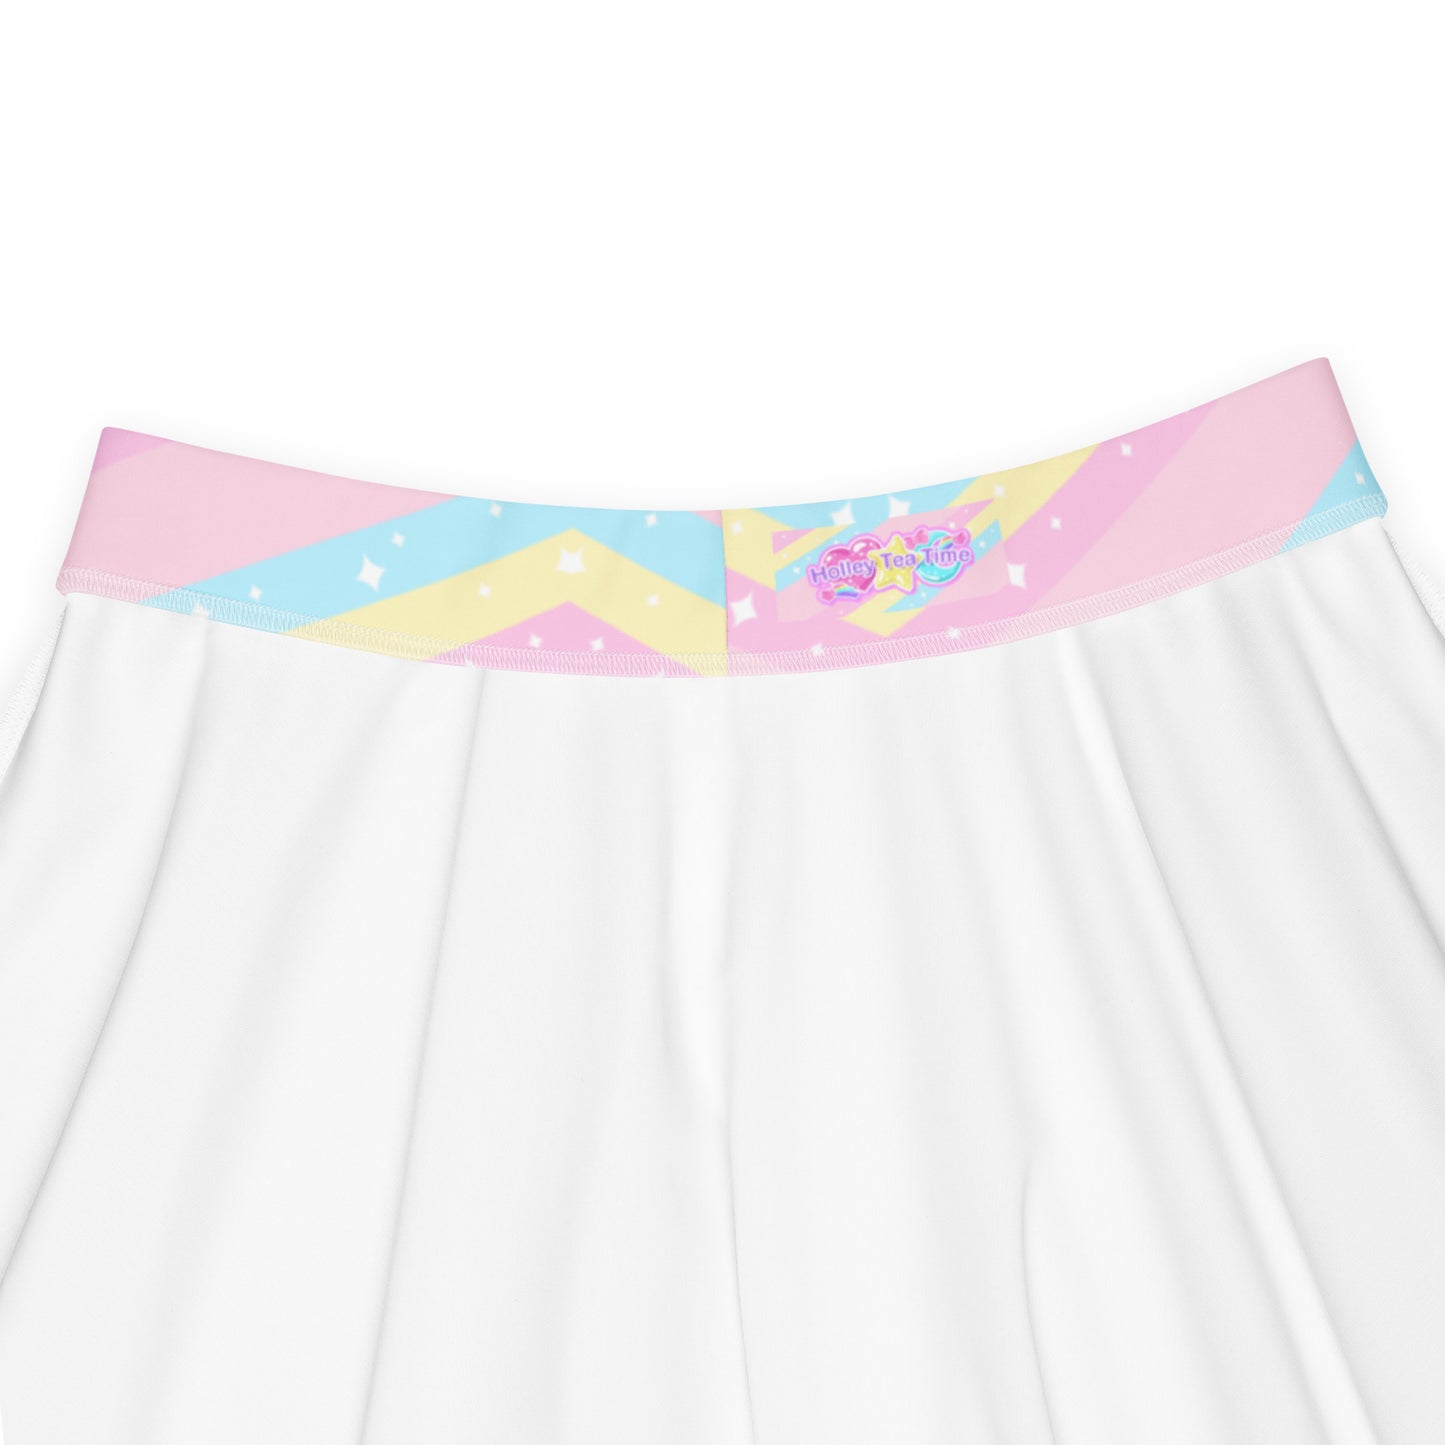 Teatime Fantasy Pink Rainbow Skater Skirt